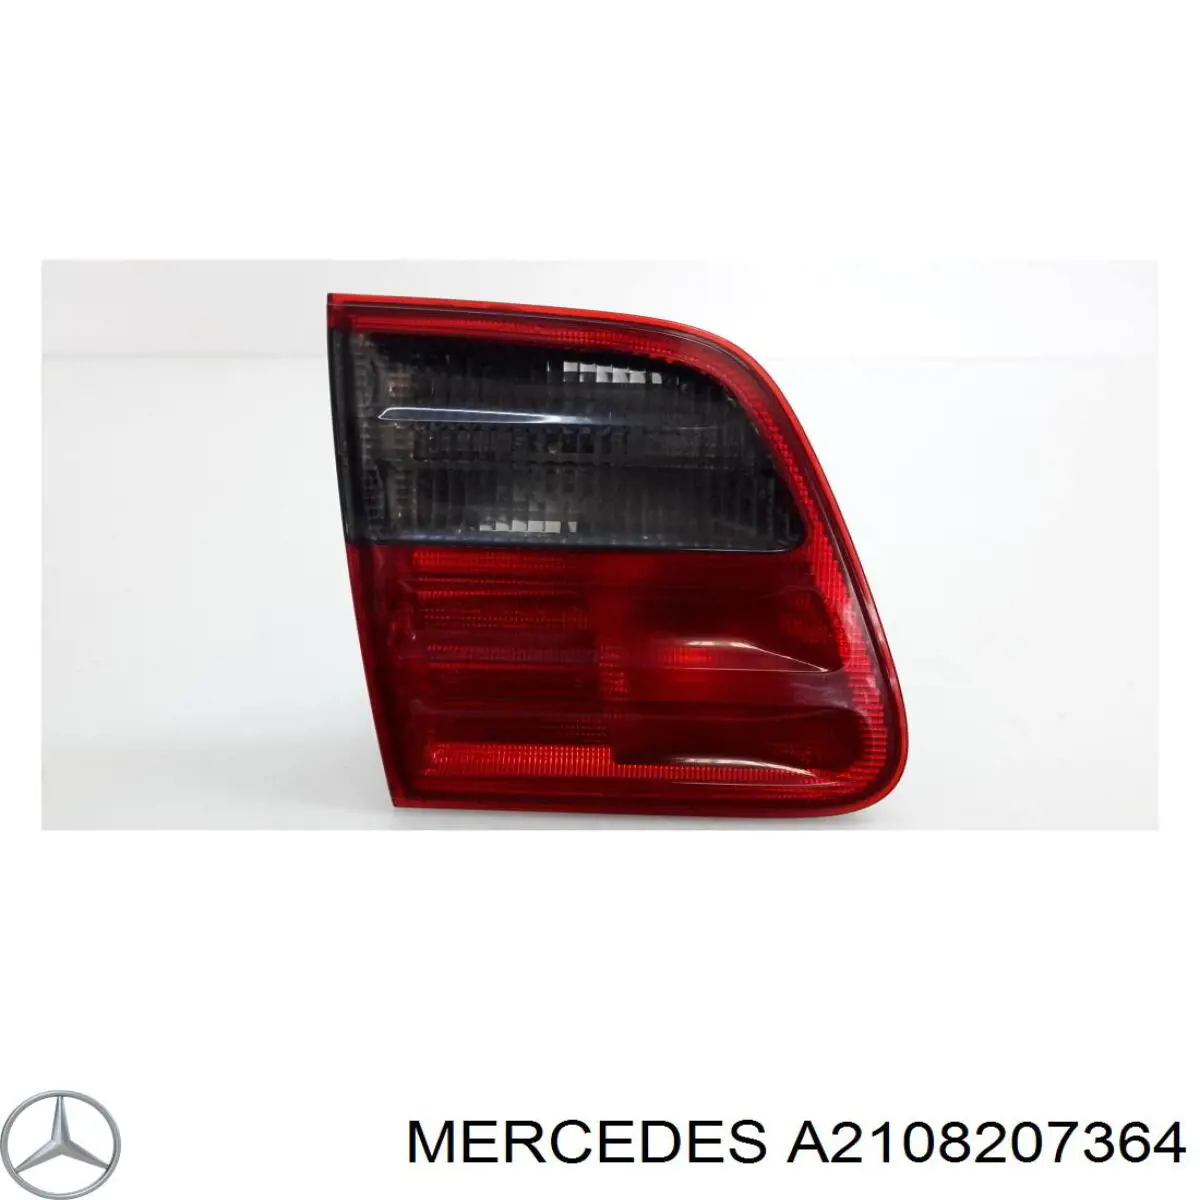 2108207364 Mercedes lanterna traseira esquerda interna